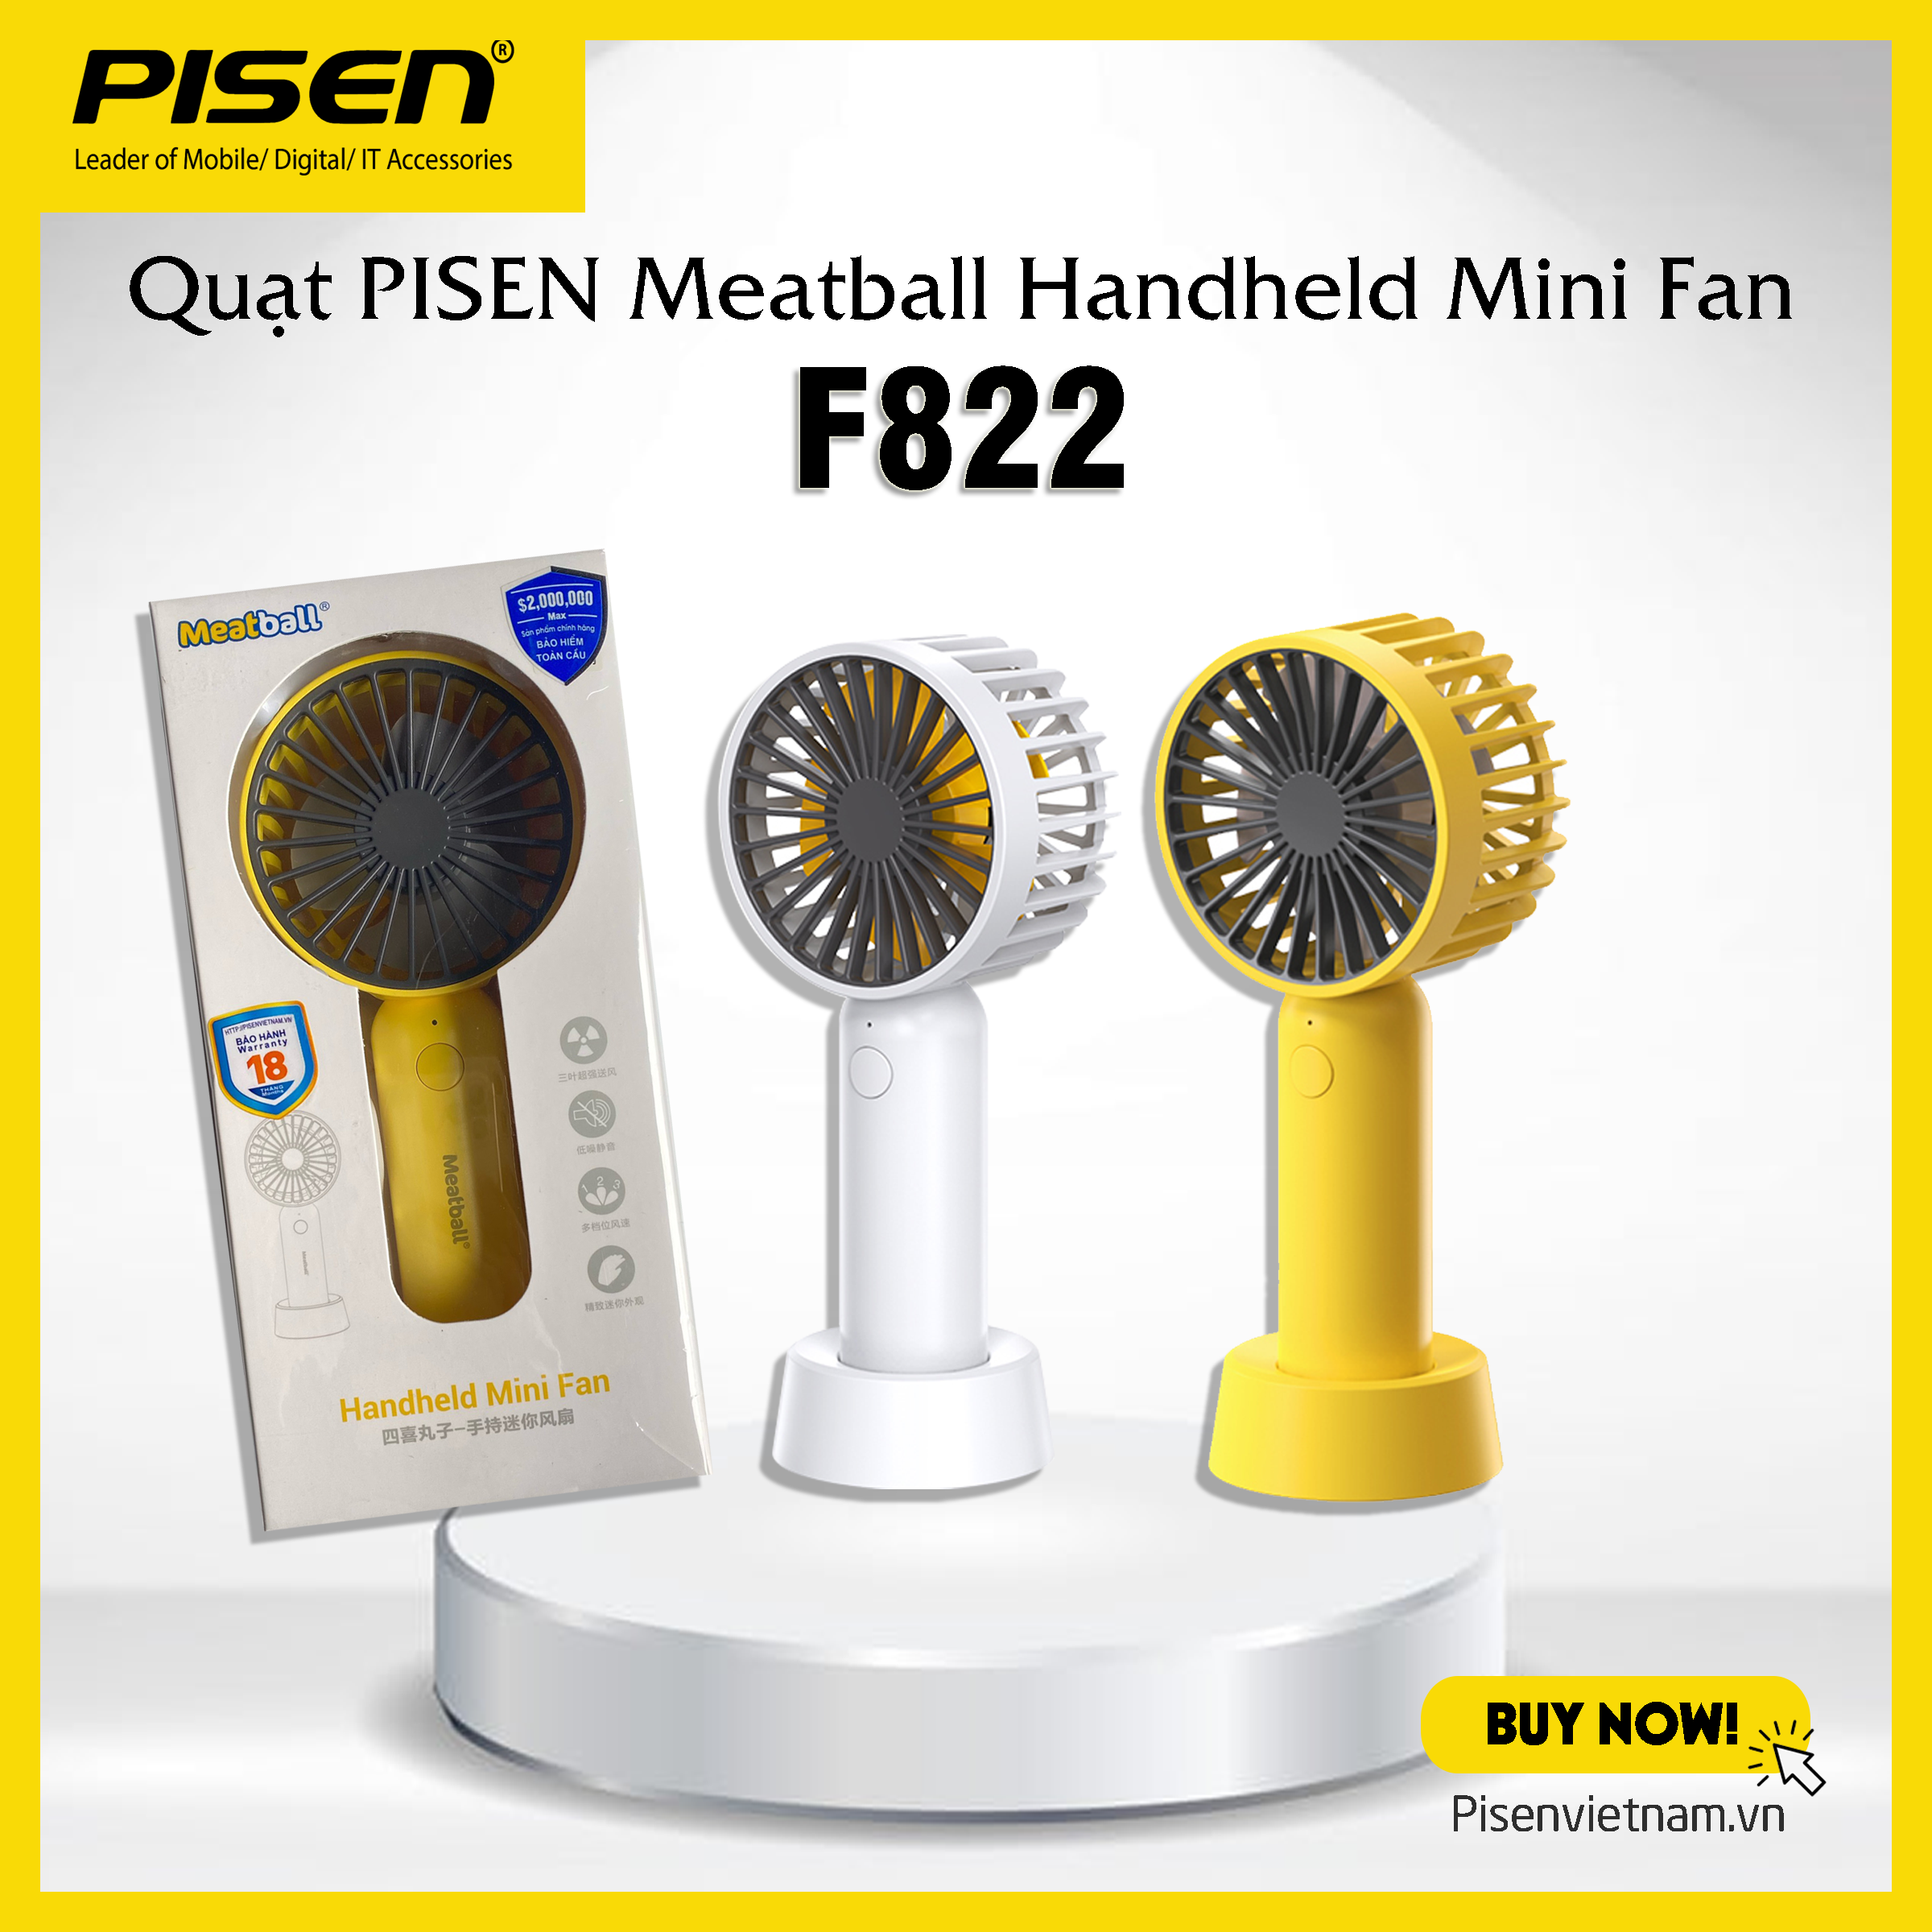 Quạt PISEN Meatball Handheld Mini Fan F822 vàng/ trắng - Hàng chính hãng